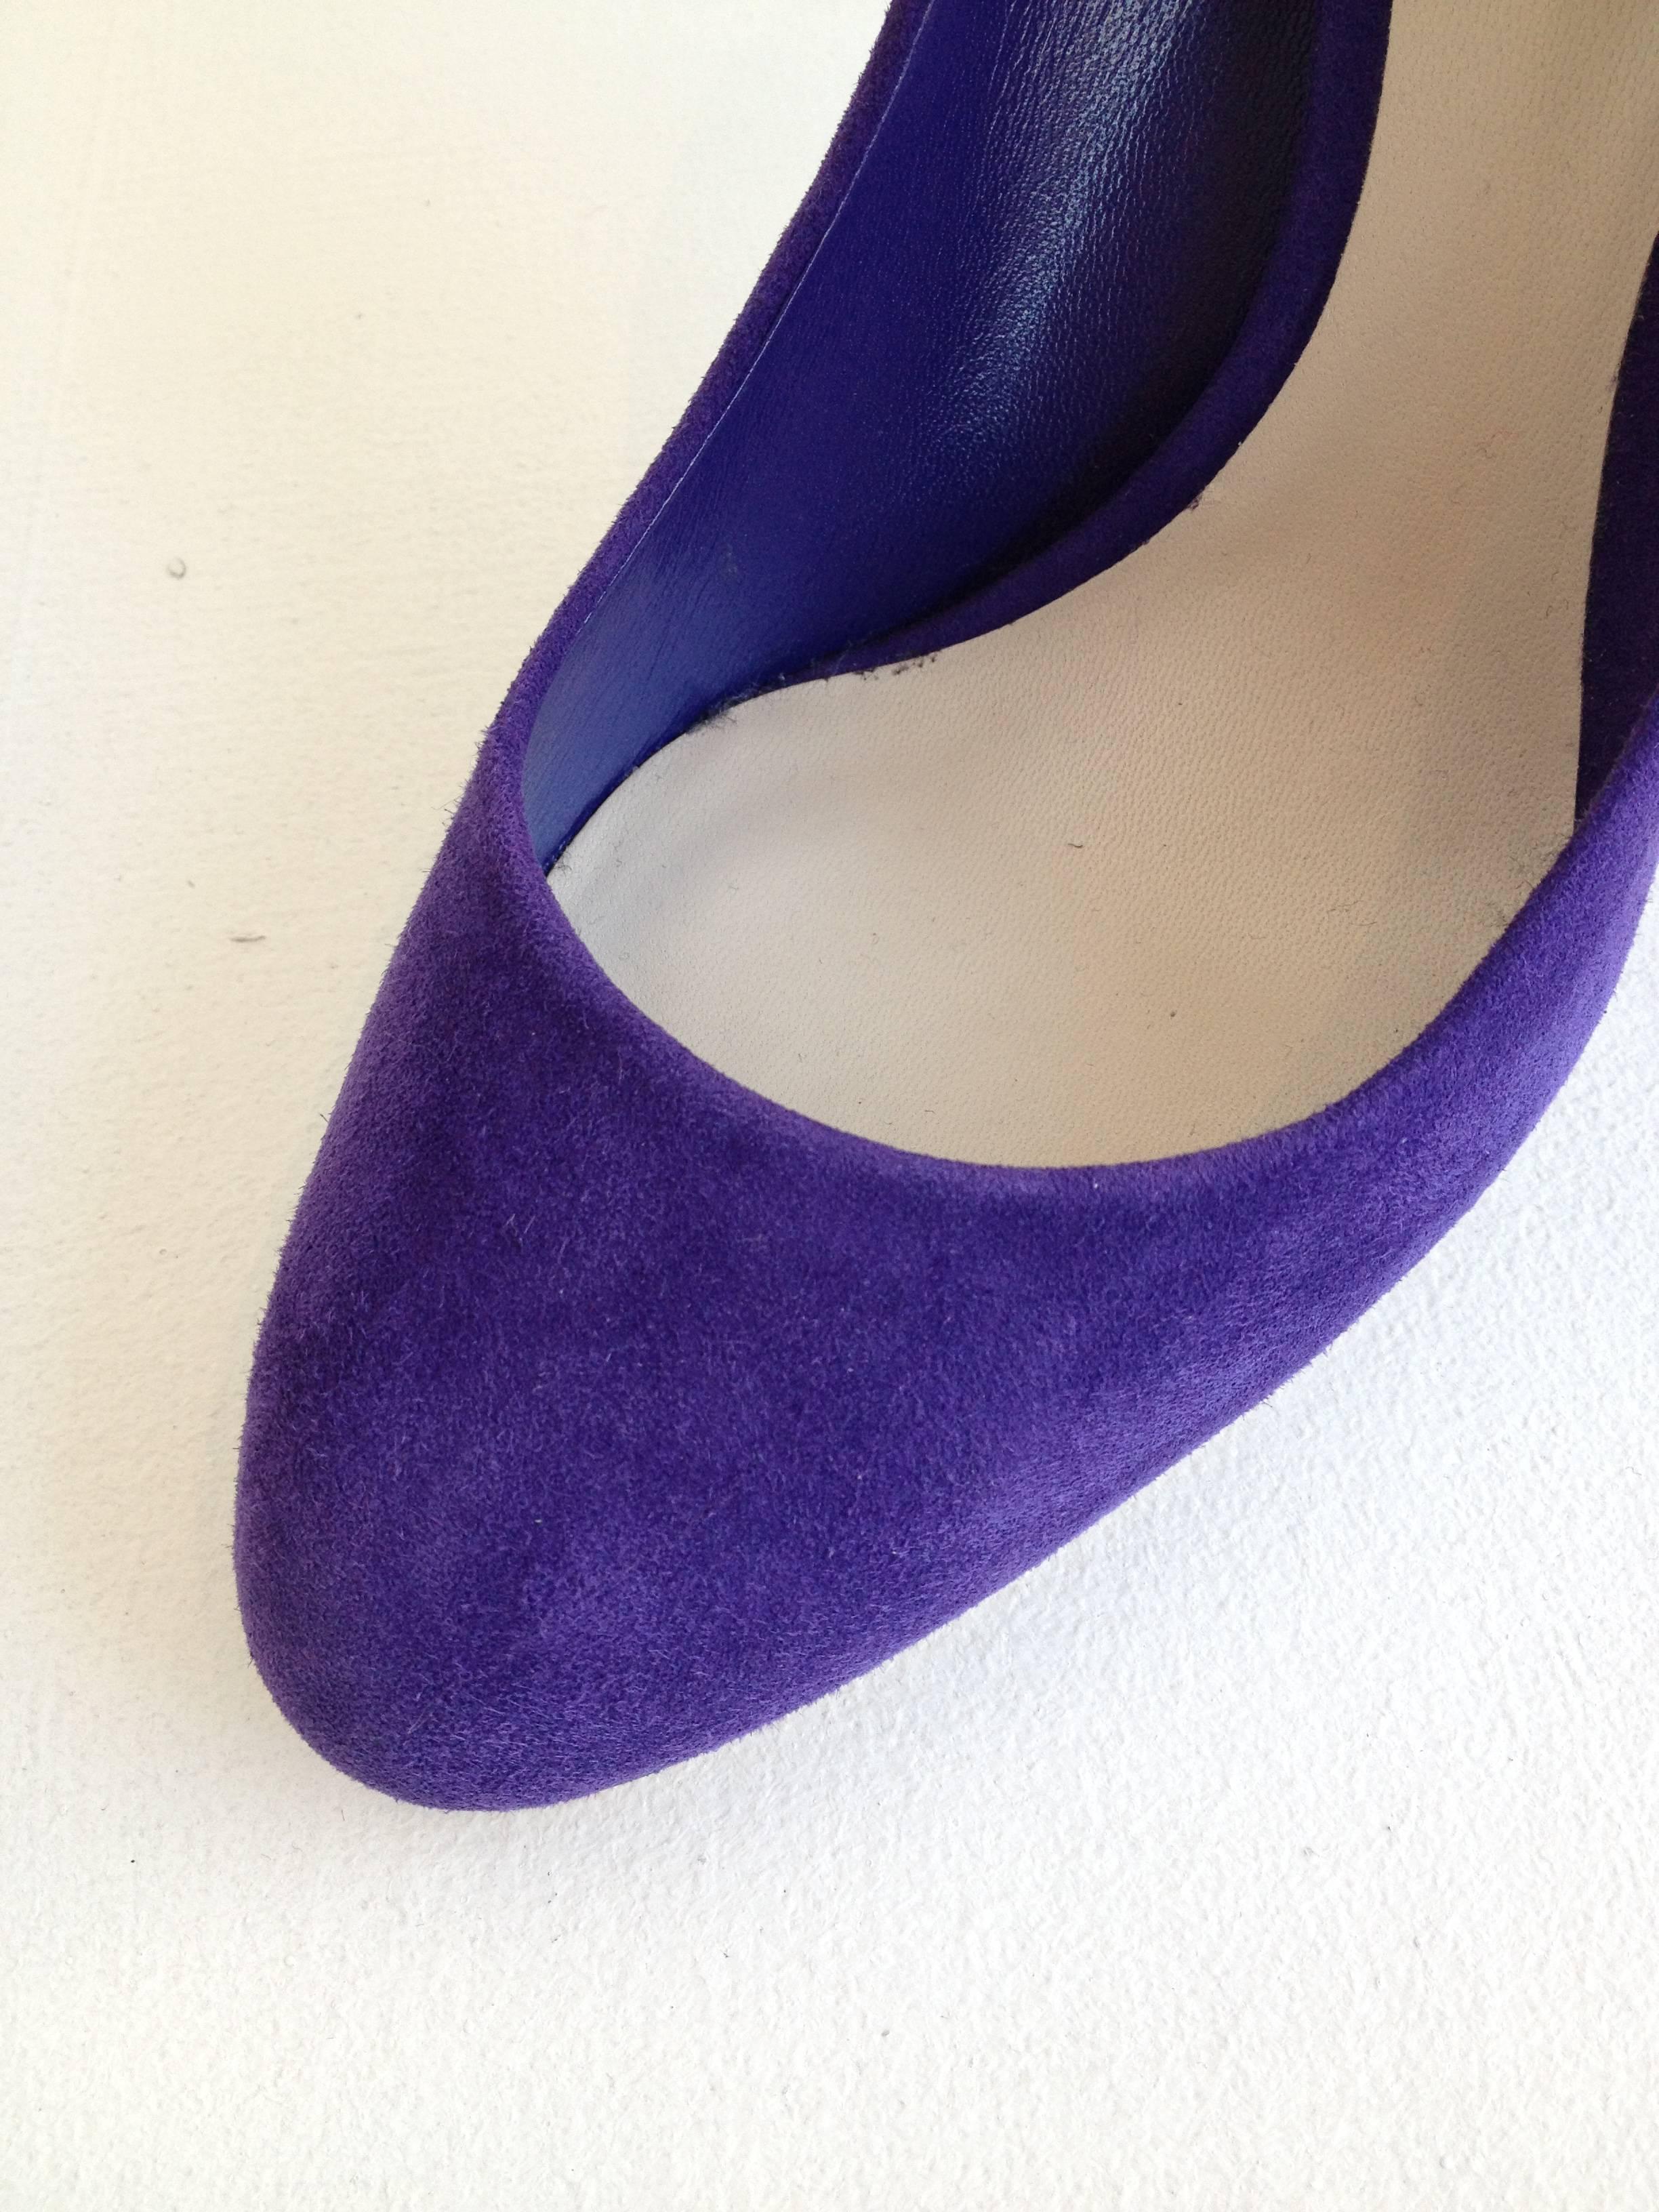 Christian Dior Purple Suede Stiletto Heels Size 36.5 (6) 1